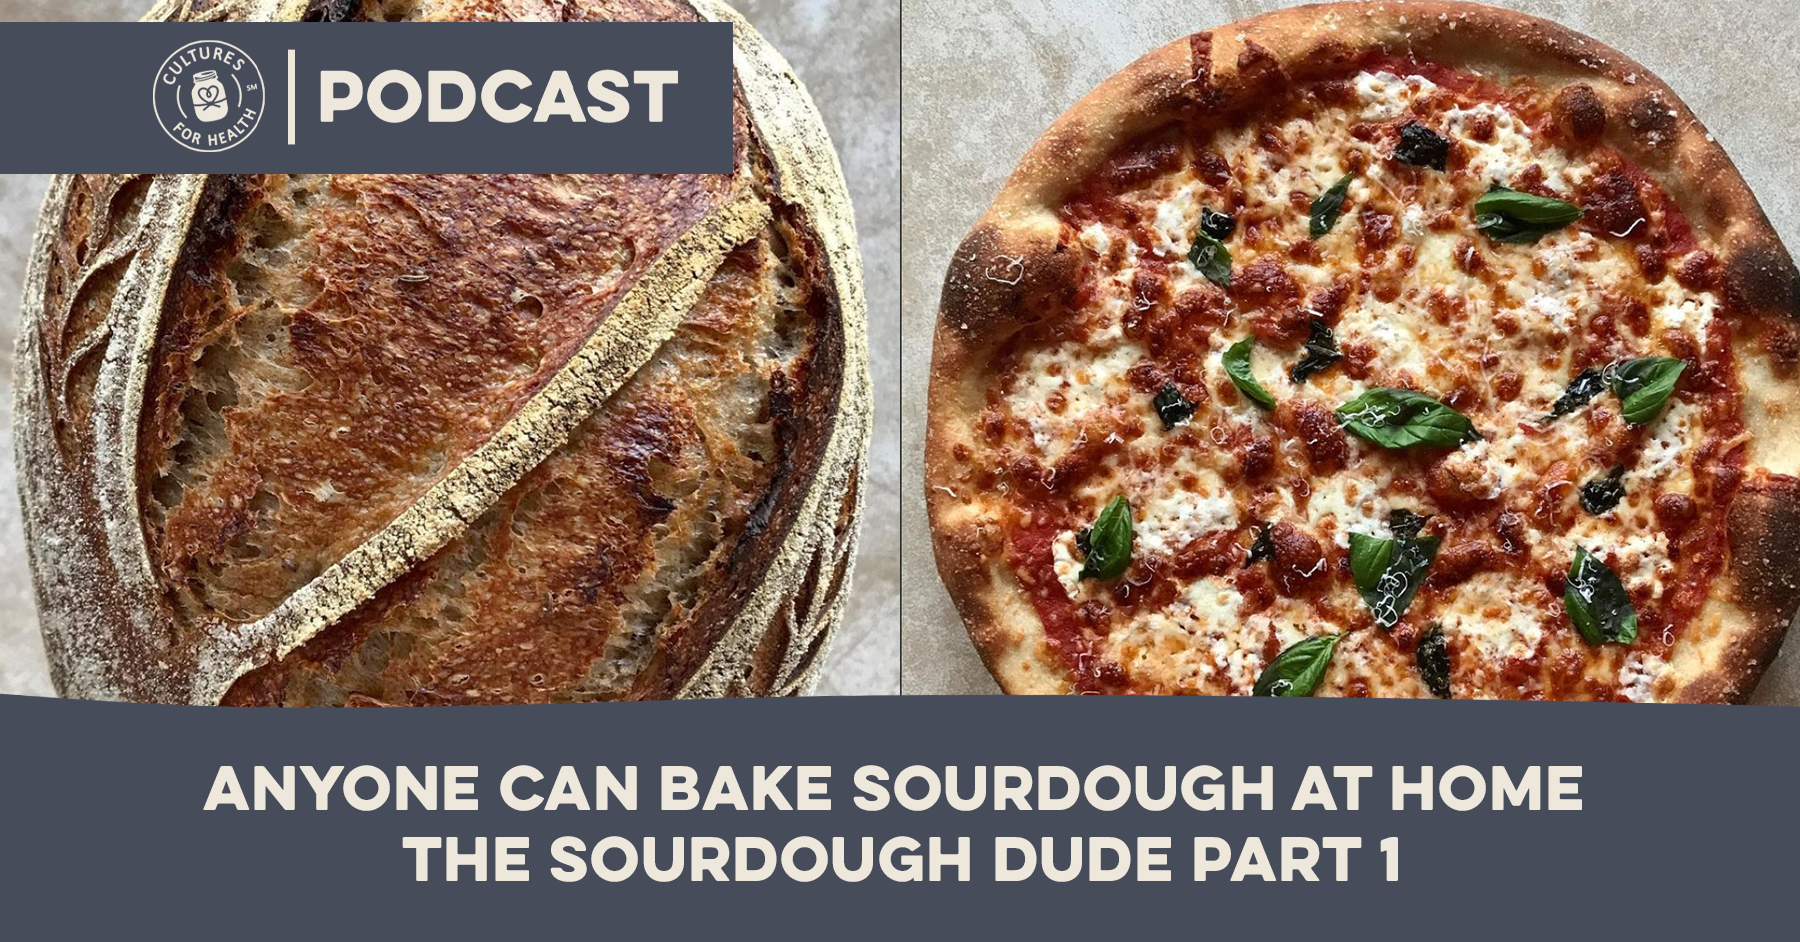 sourdough bread and pizza